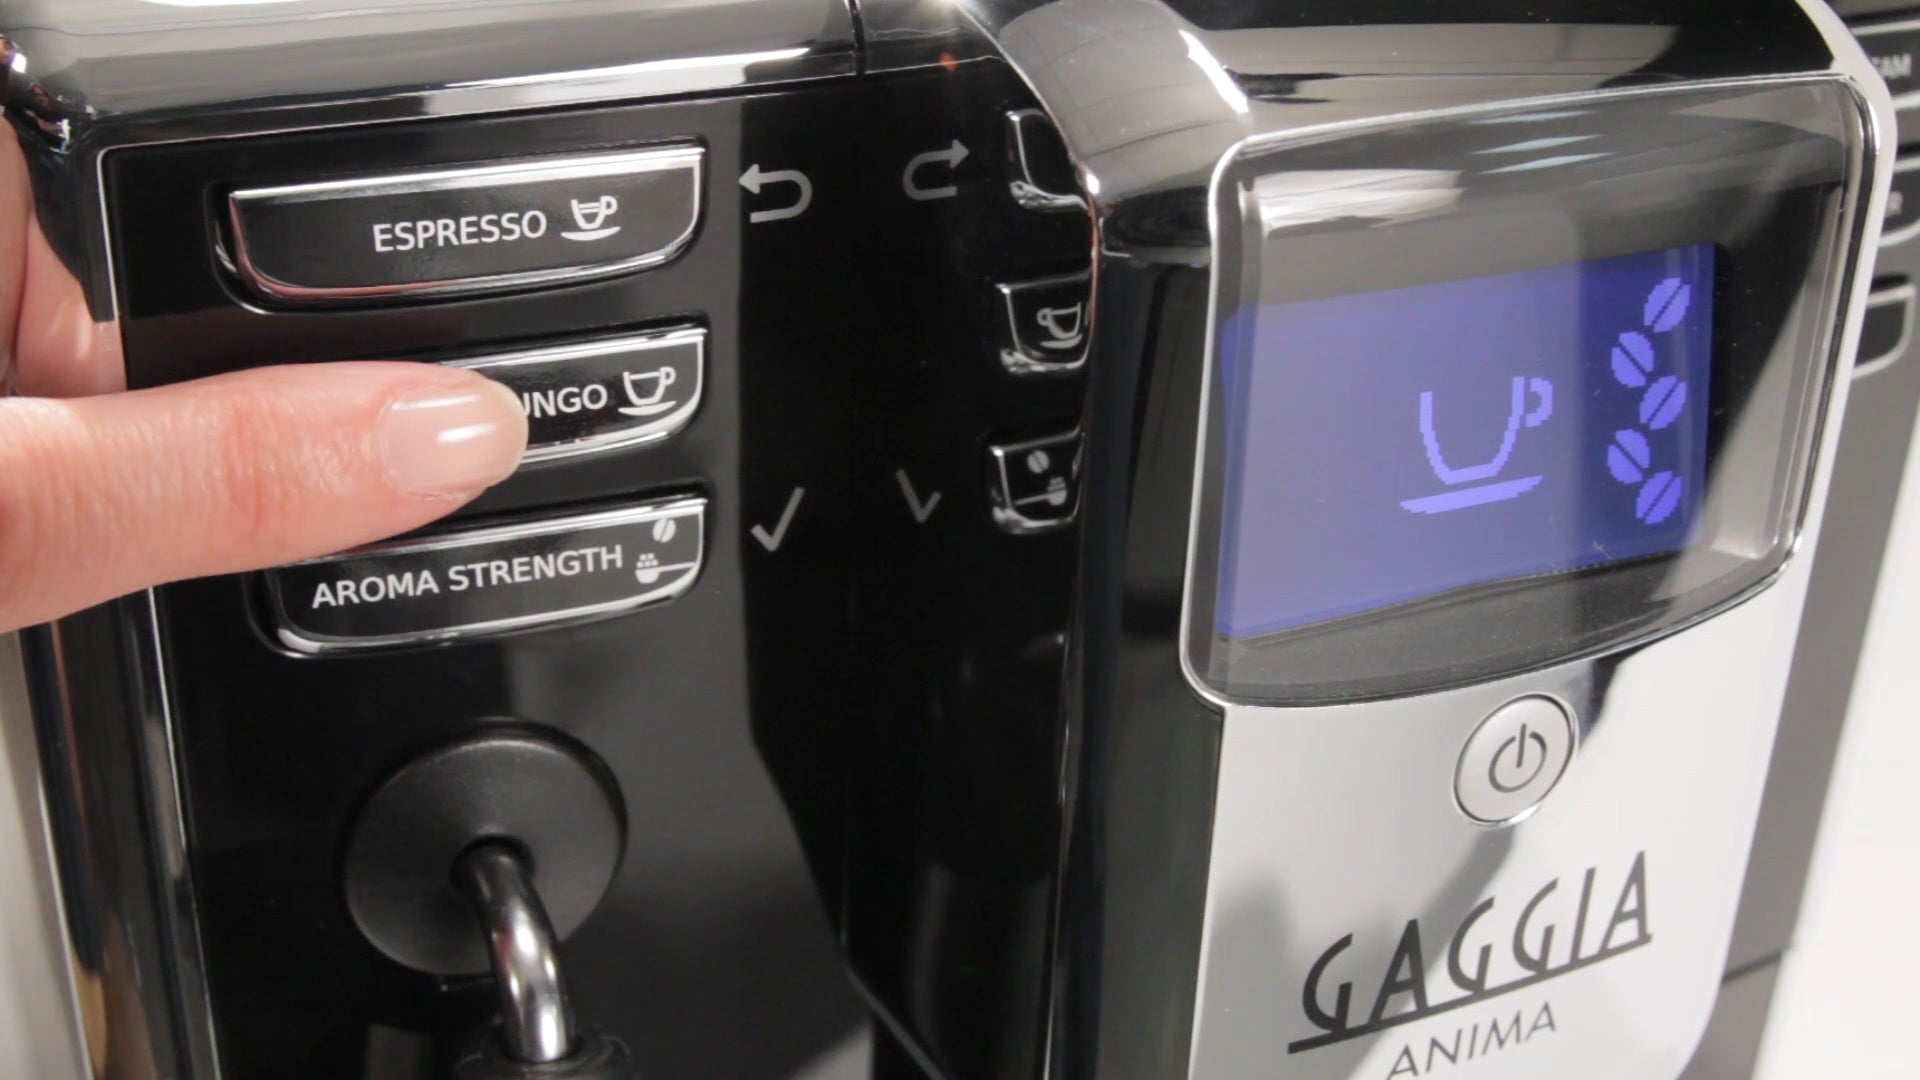 Refurbished Gaggia Anima Super-Automatic Espresso Machine - Control Panel